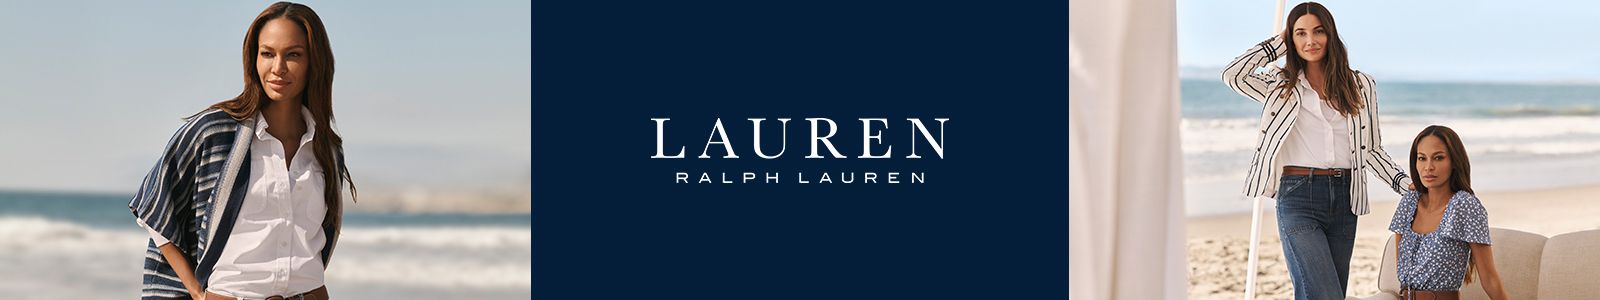 Lauren, Ralph Lauren